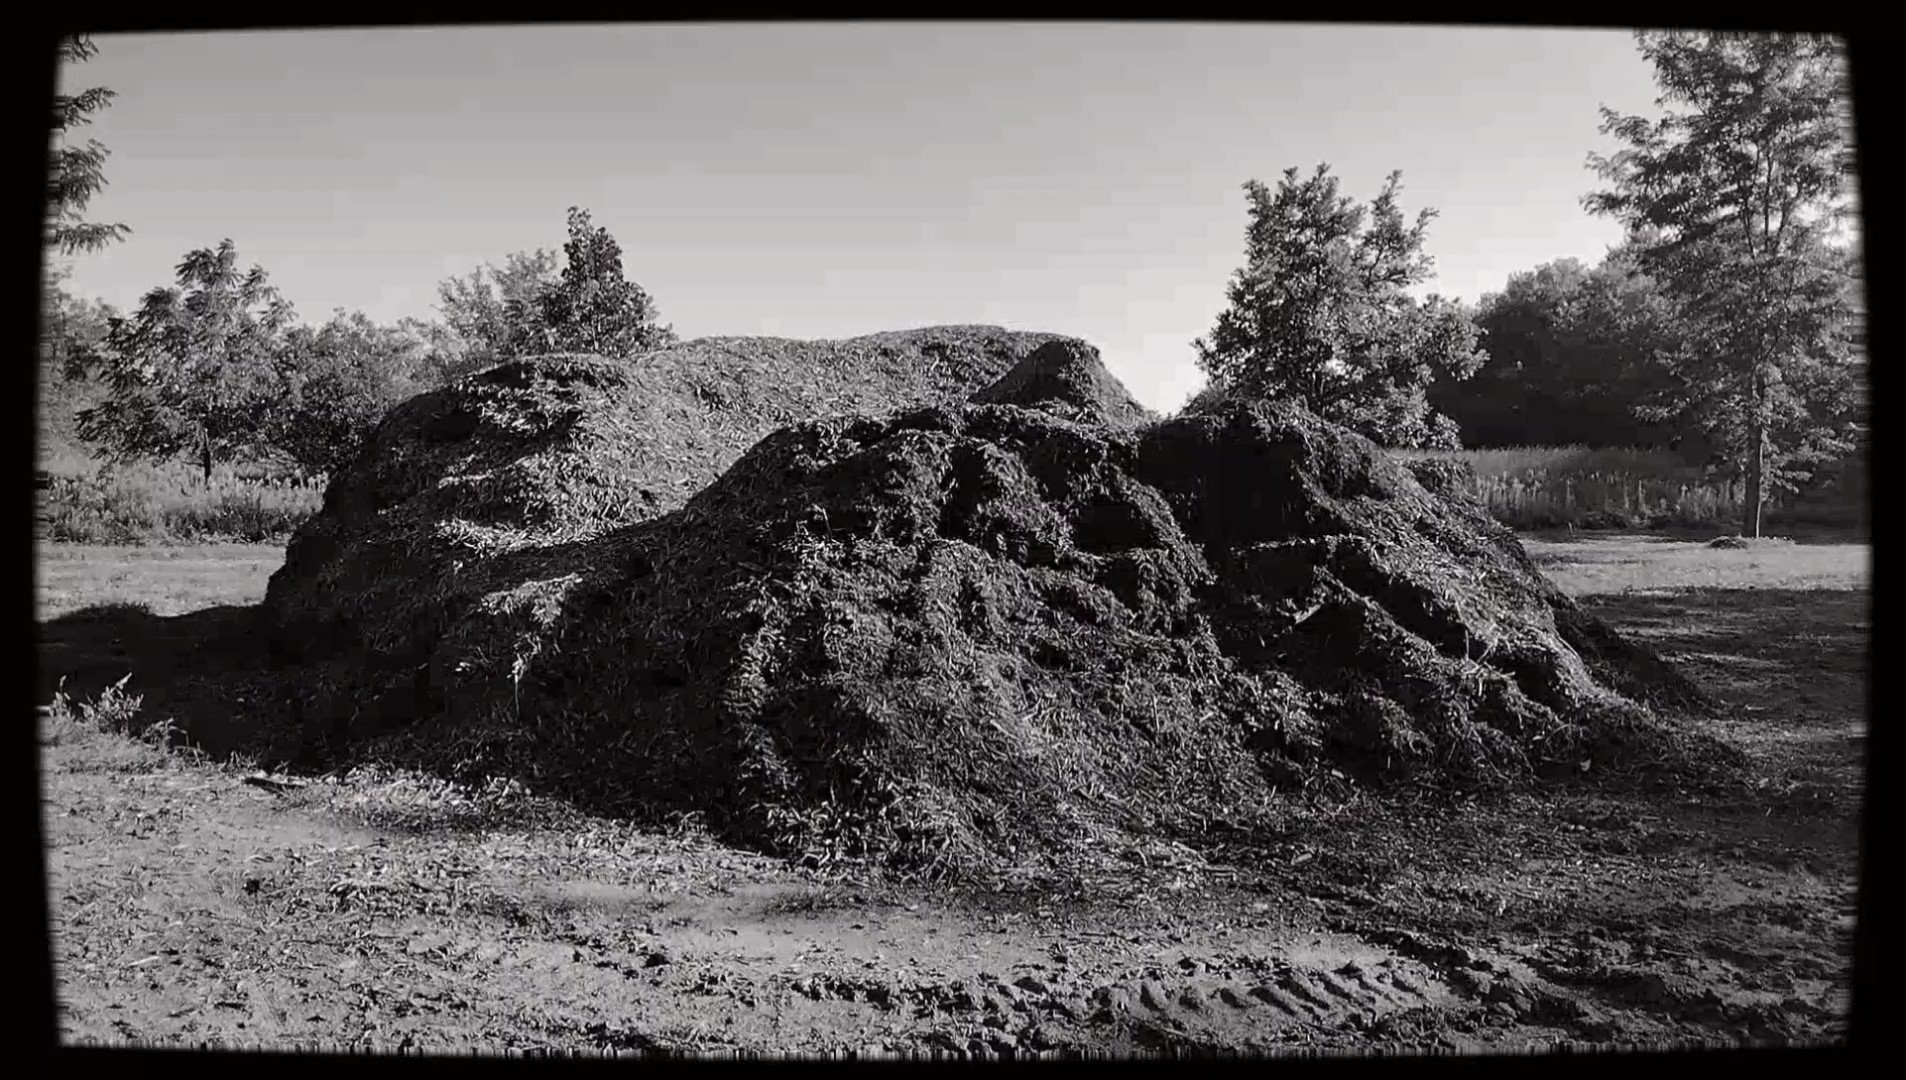 Piles, a film by Sean Welch